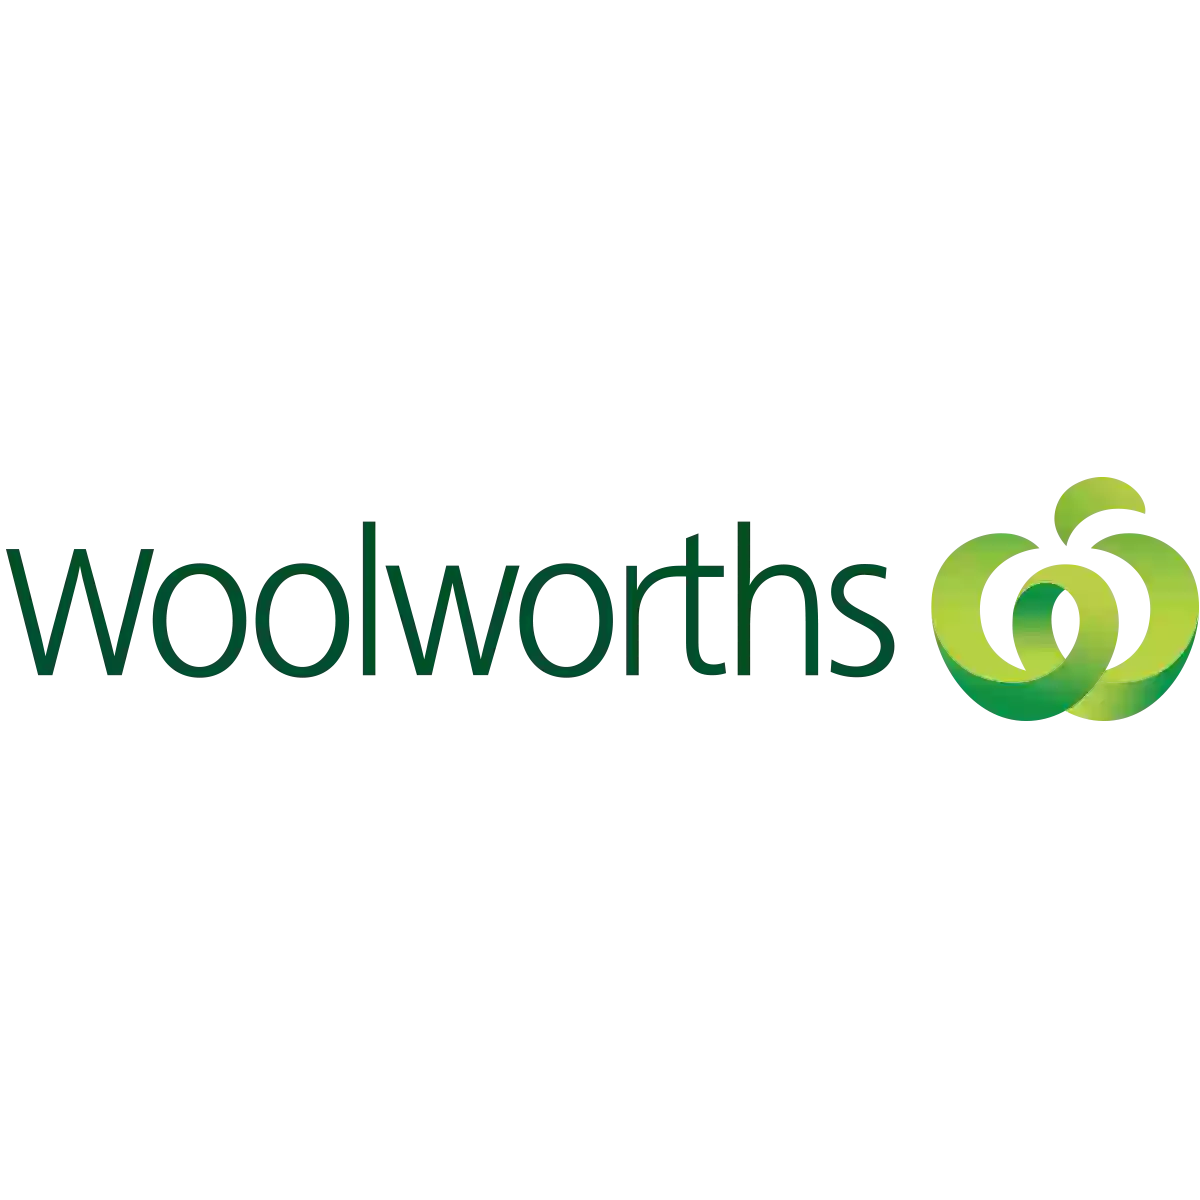 Woolworths Petrie